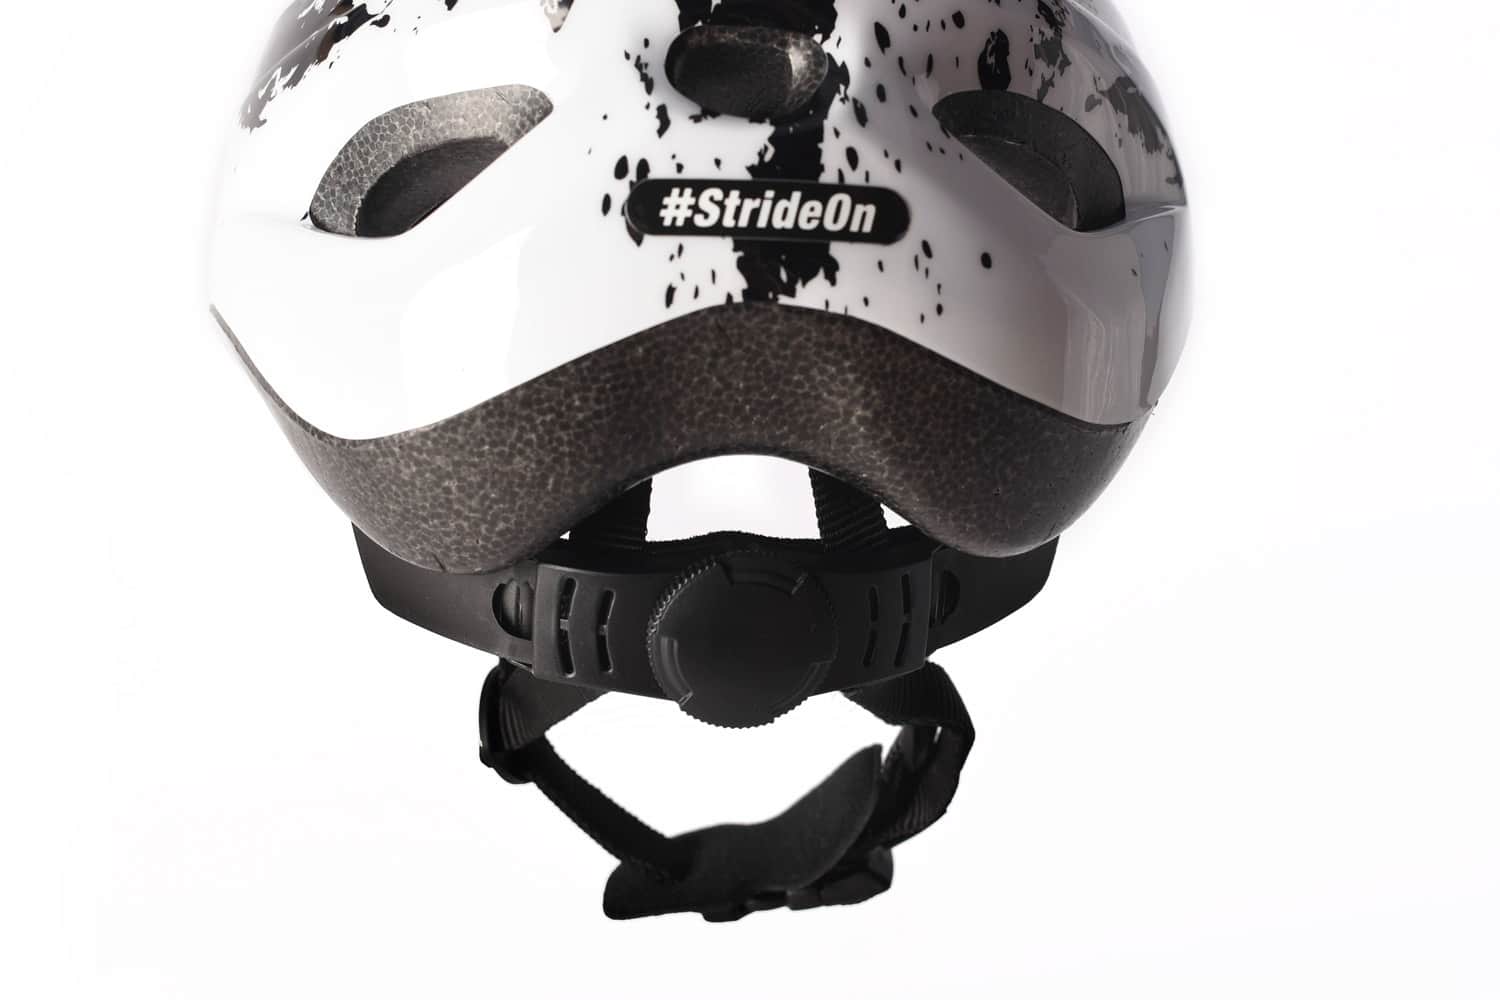 rear view of Strider Splash helmet